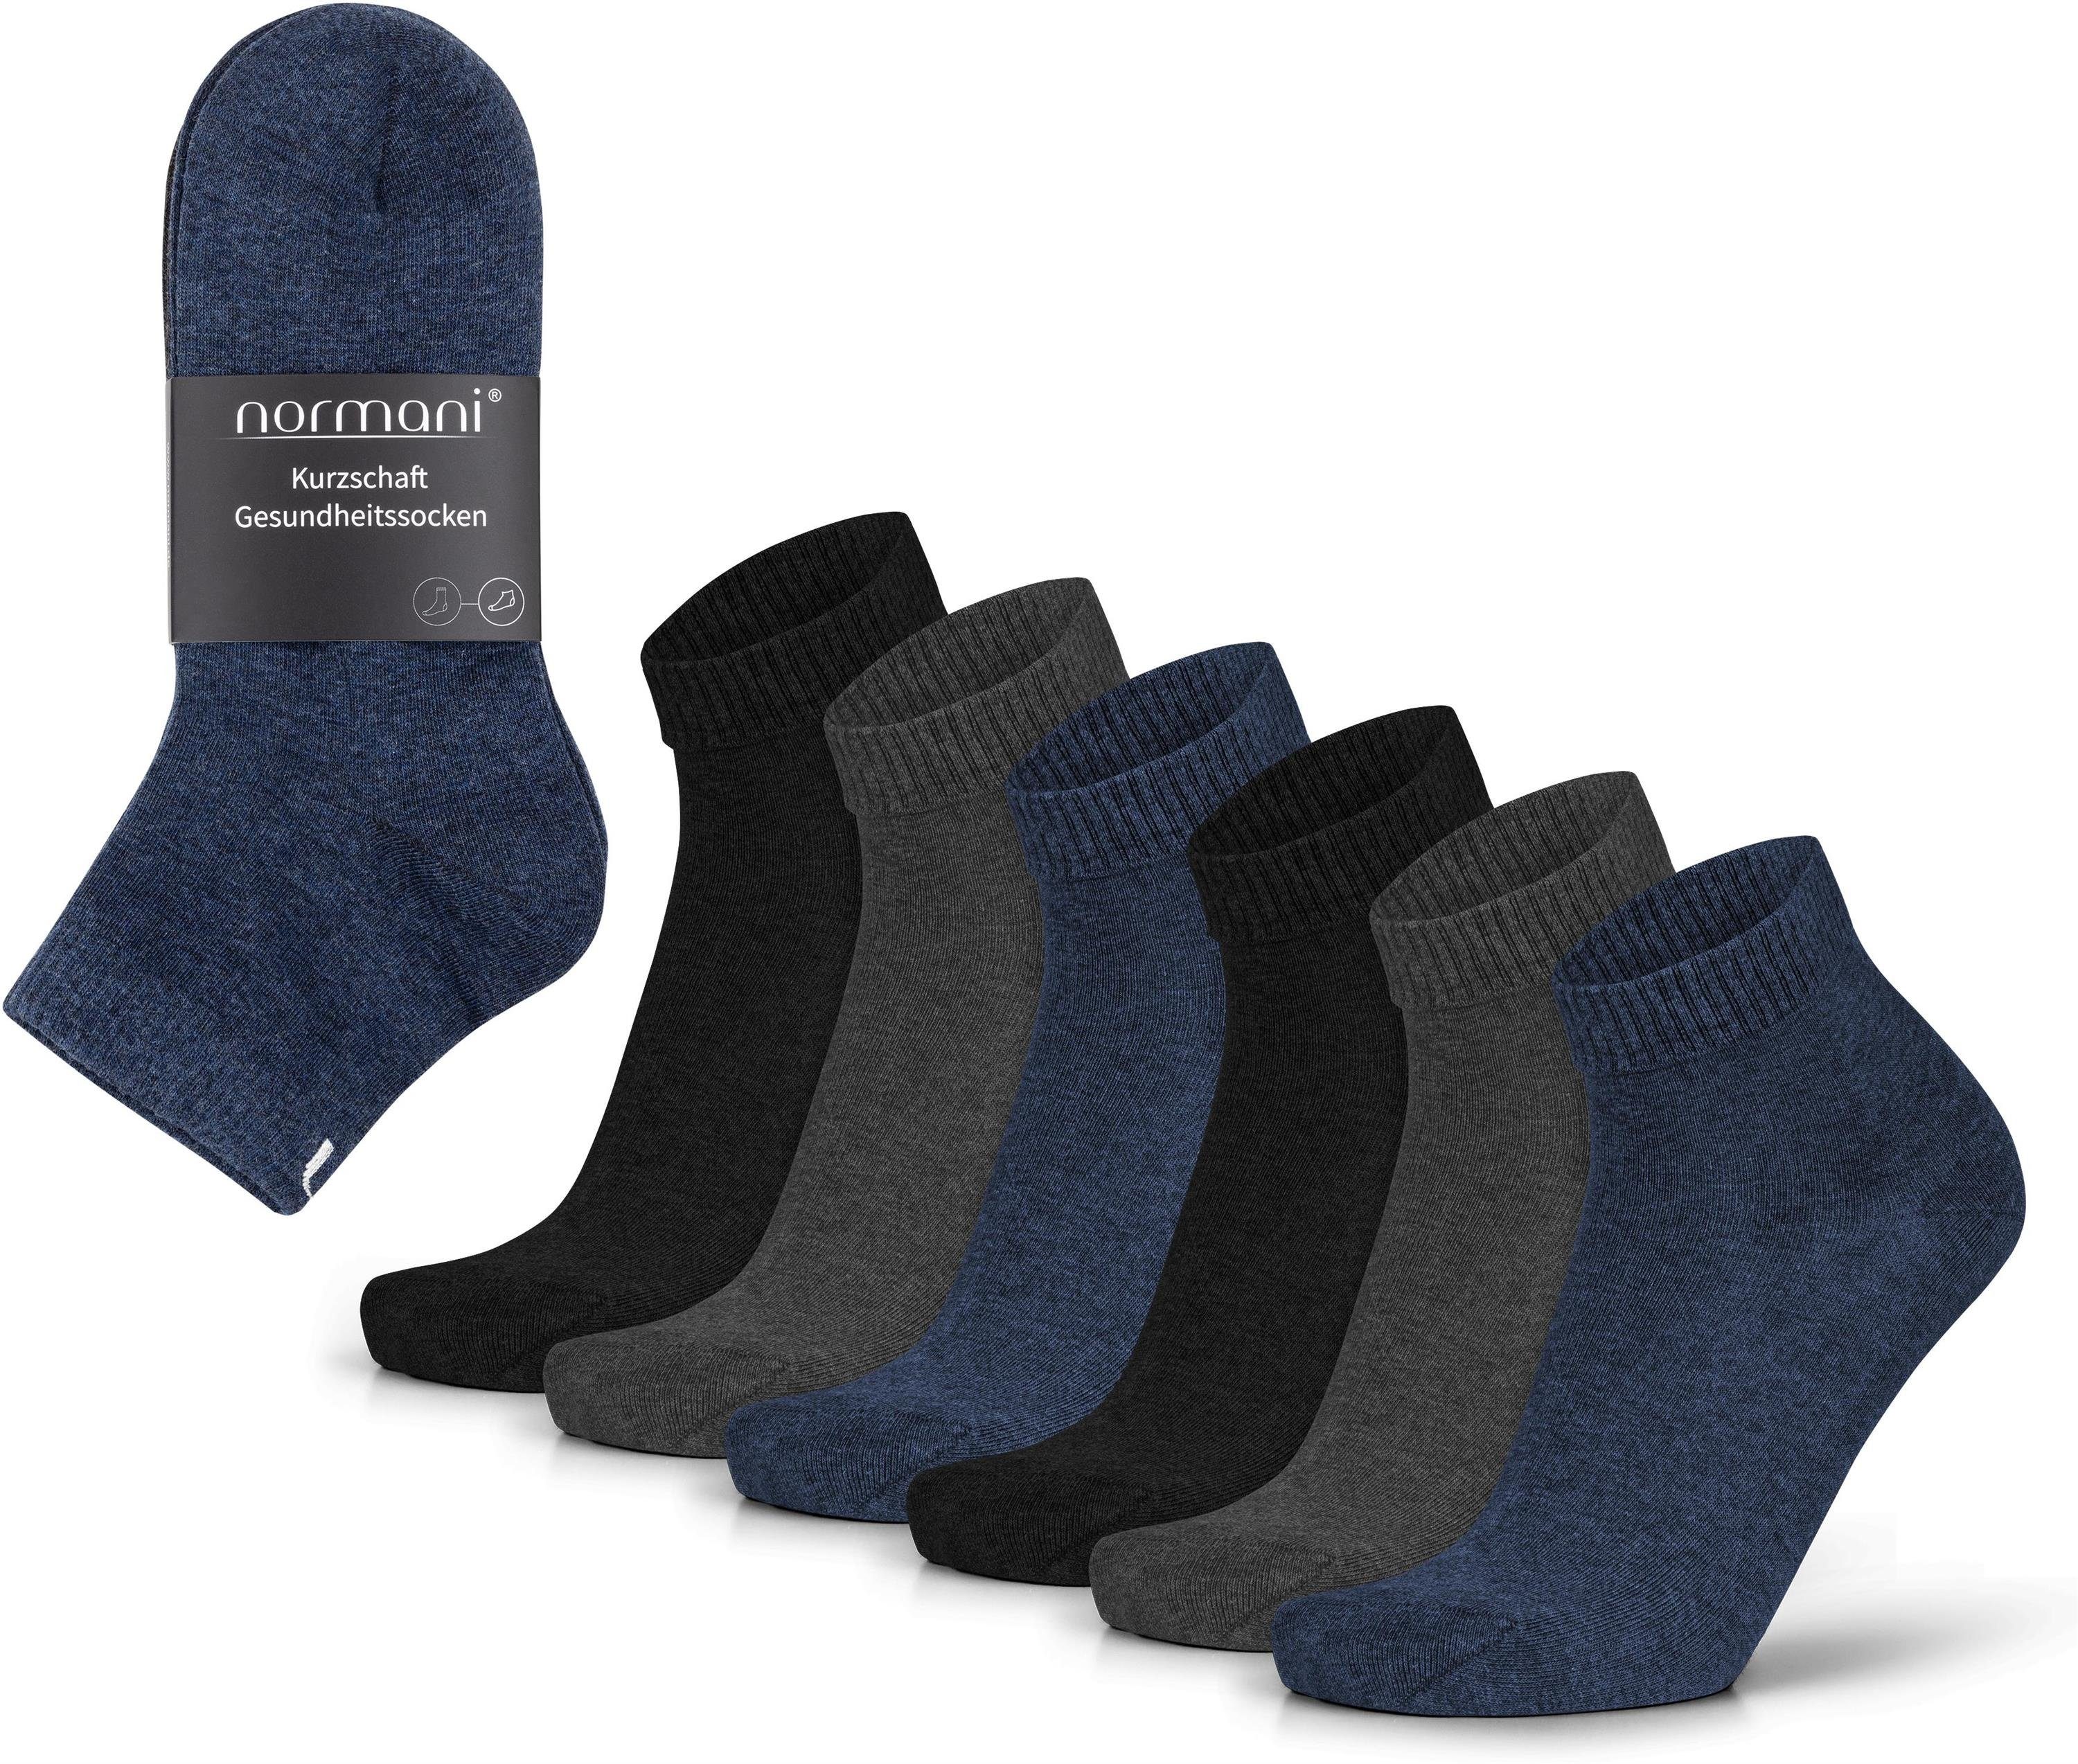 normani Sneakersocken (6 Paar) Kurzschaft Blau/Anthrazit/Schwarz Baumwolle. Gesundheitssocken aus